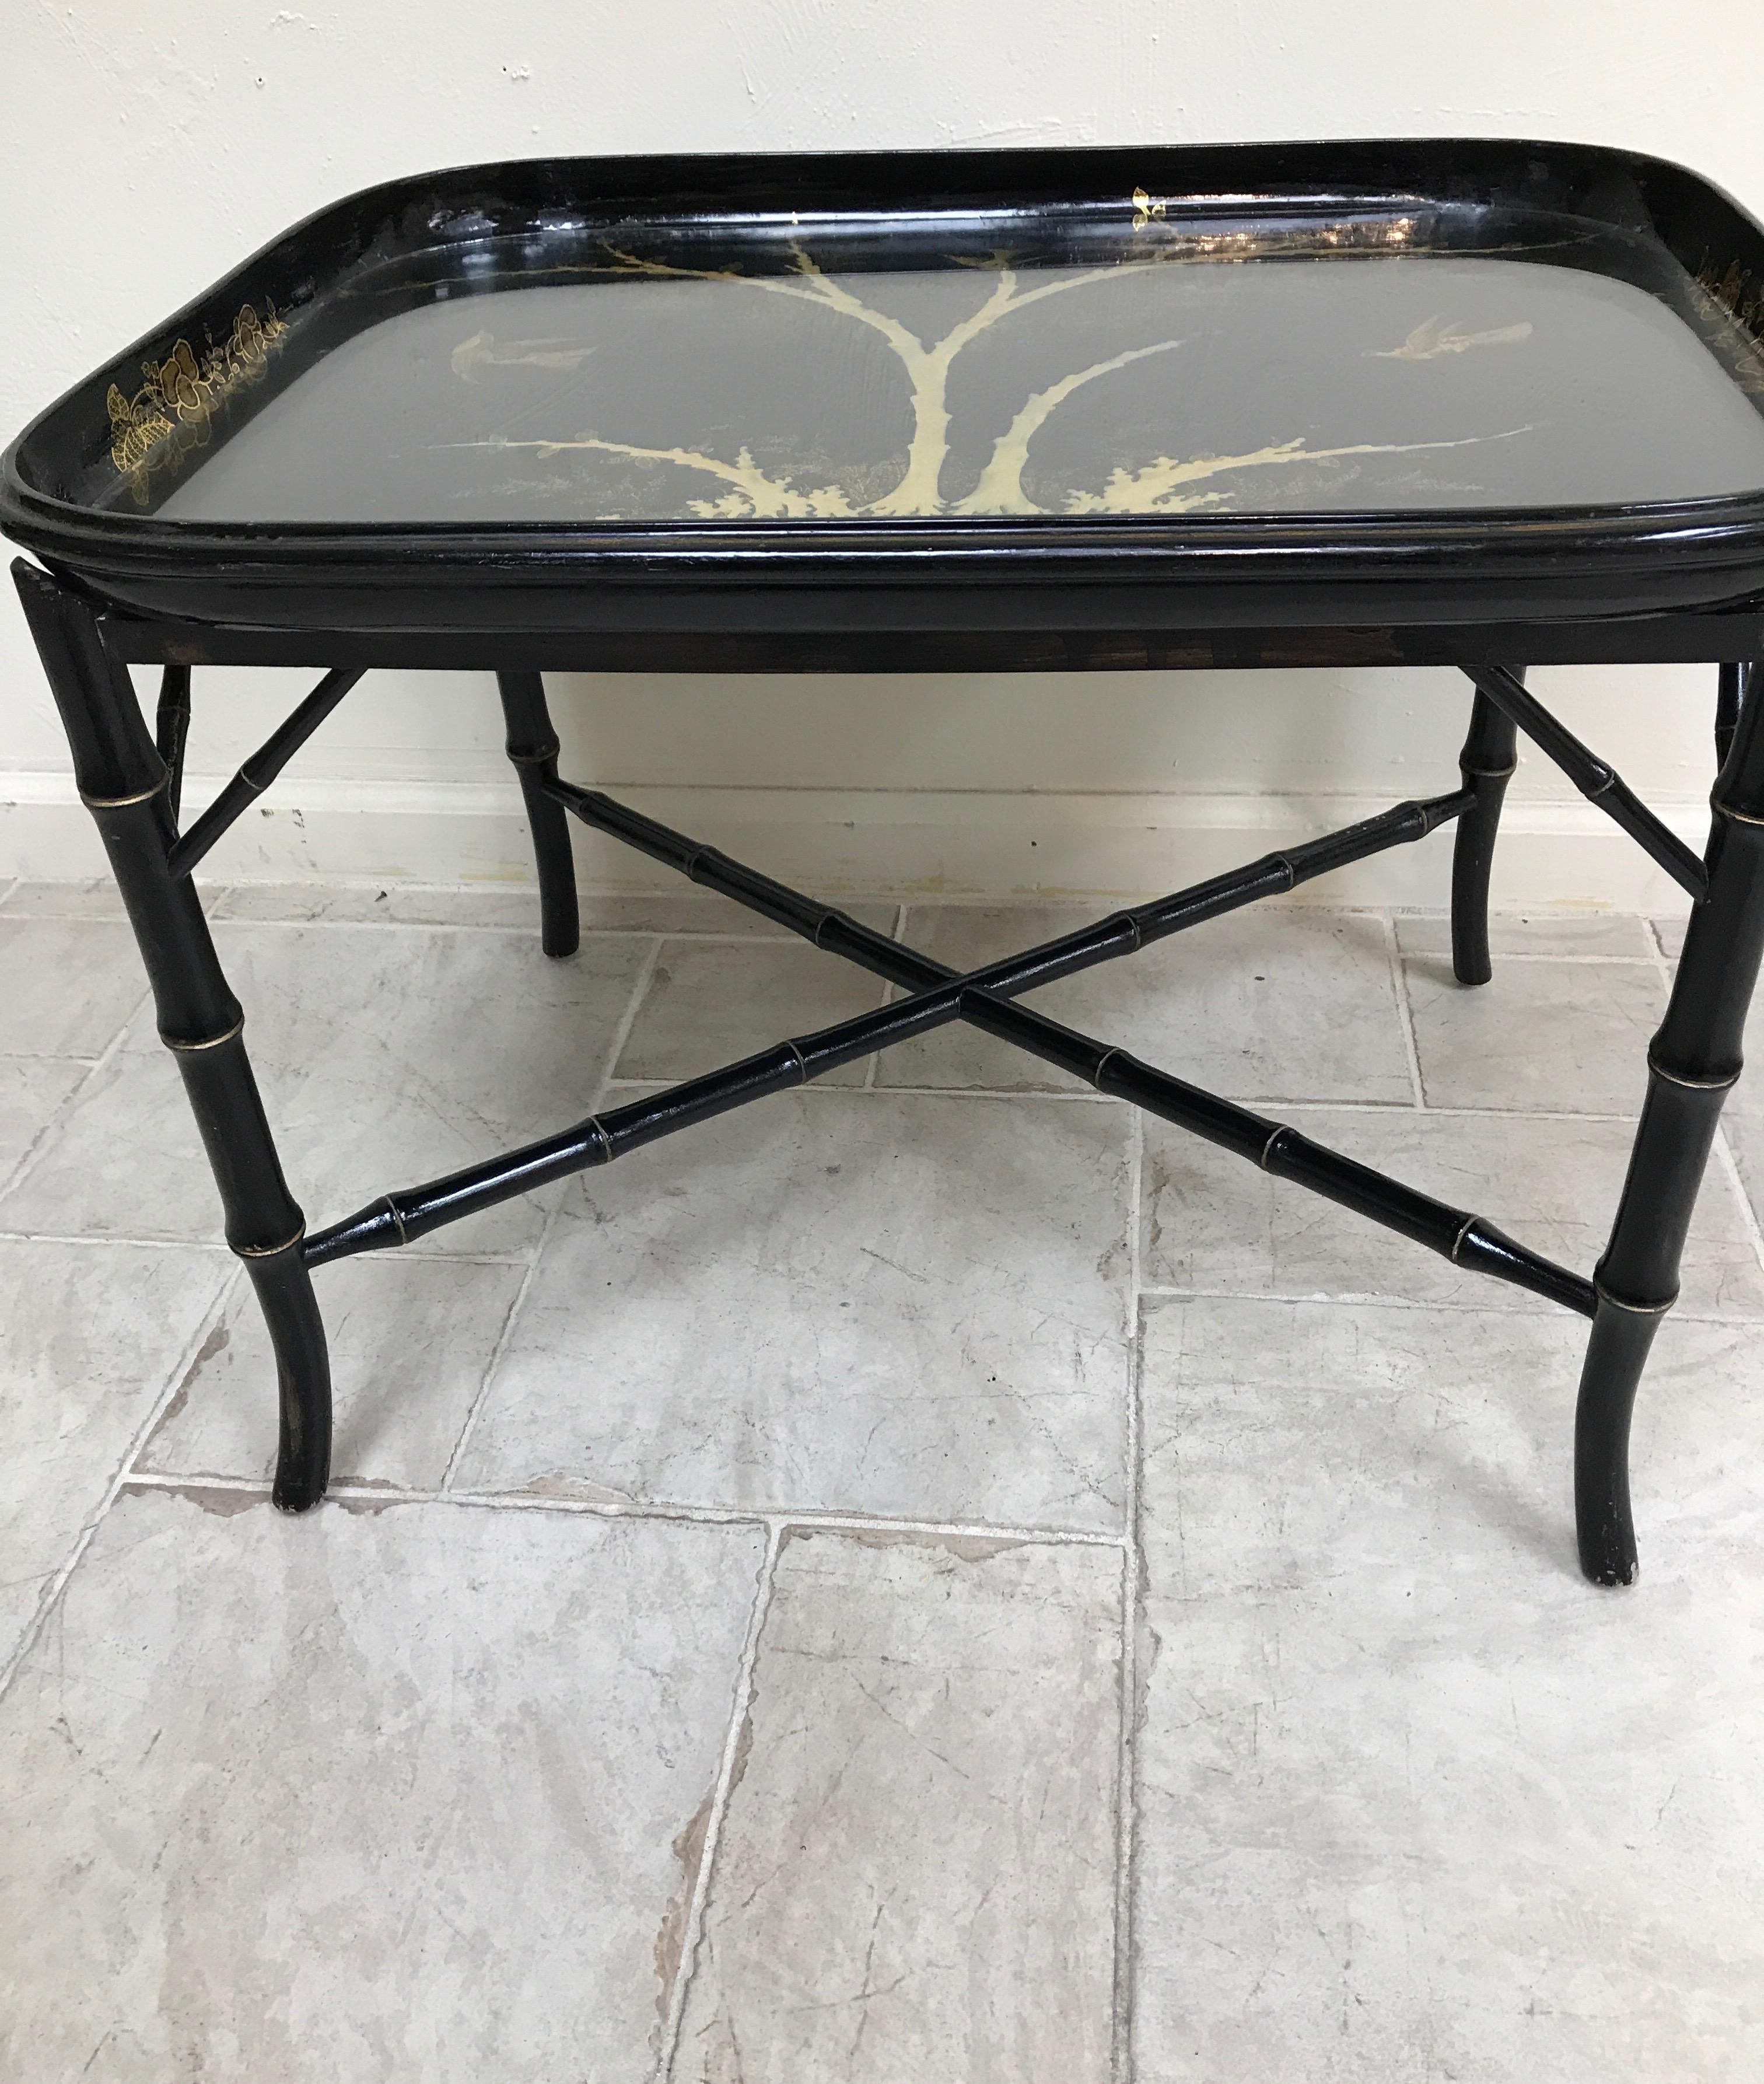 Table à plateau en papier mâché ancien en noir et or. La base est un faux bambou peint en noir. Le plateau est recouvert d'un verre protecteur qui recouvre le motif d'arbre et d'oiseau doré.